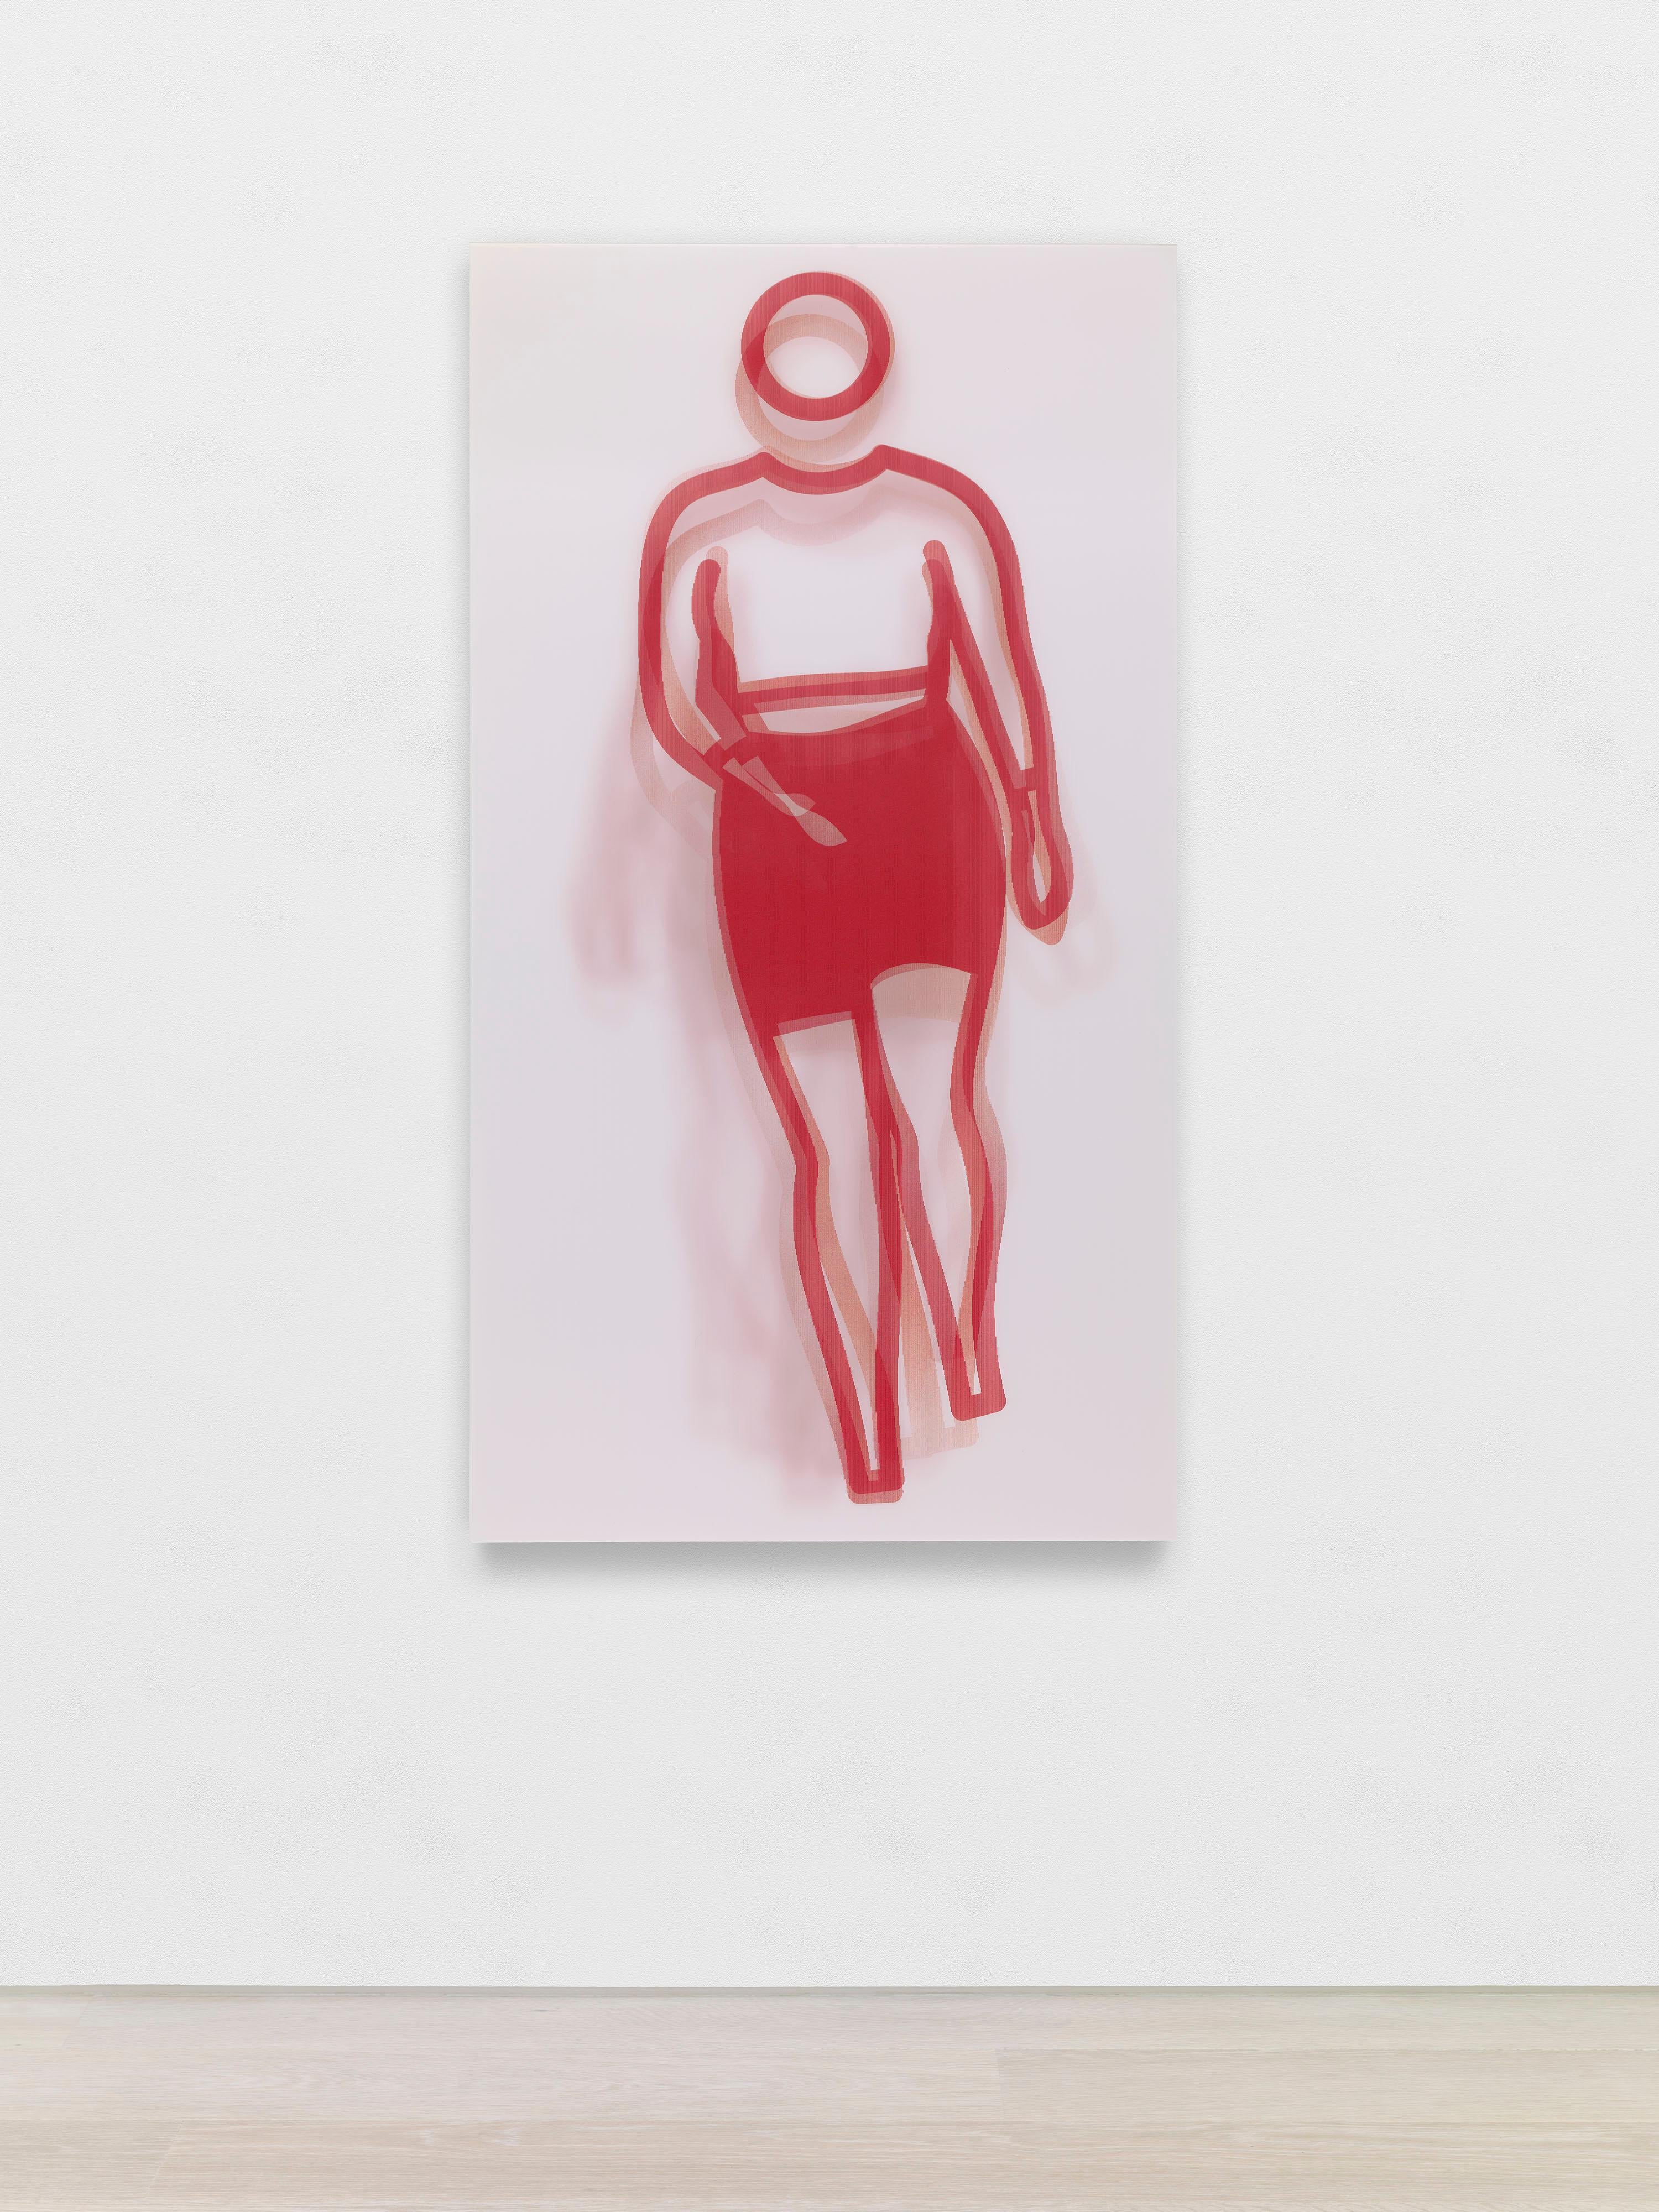 Figurative Print Julian Opie - Moving Large Contemporary Acrylic Panel of Dancing Figure, Four Colors, Dance 3 (panneau acrylique contemporain de grande taille représentant une figure dansante)